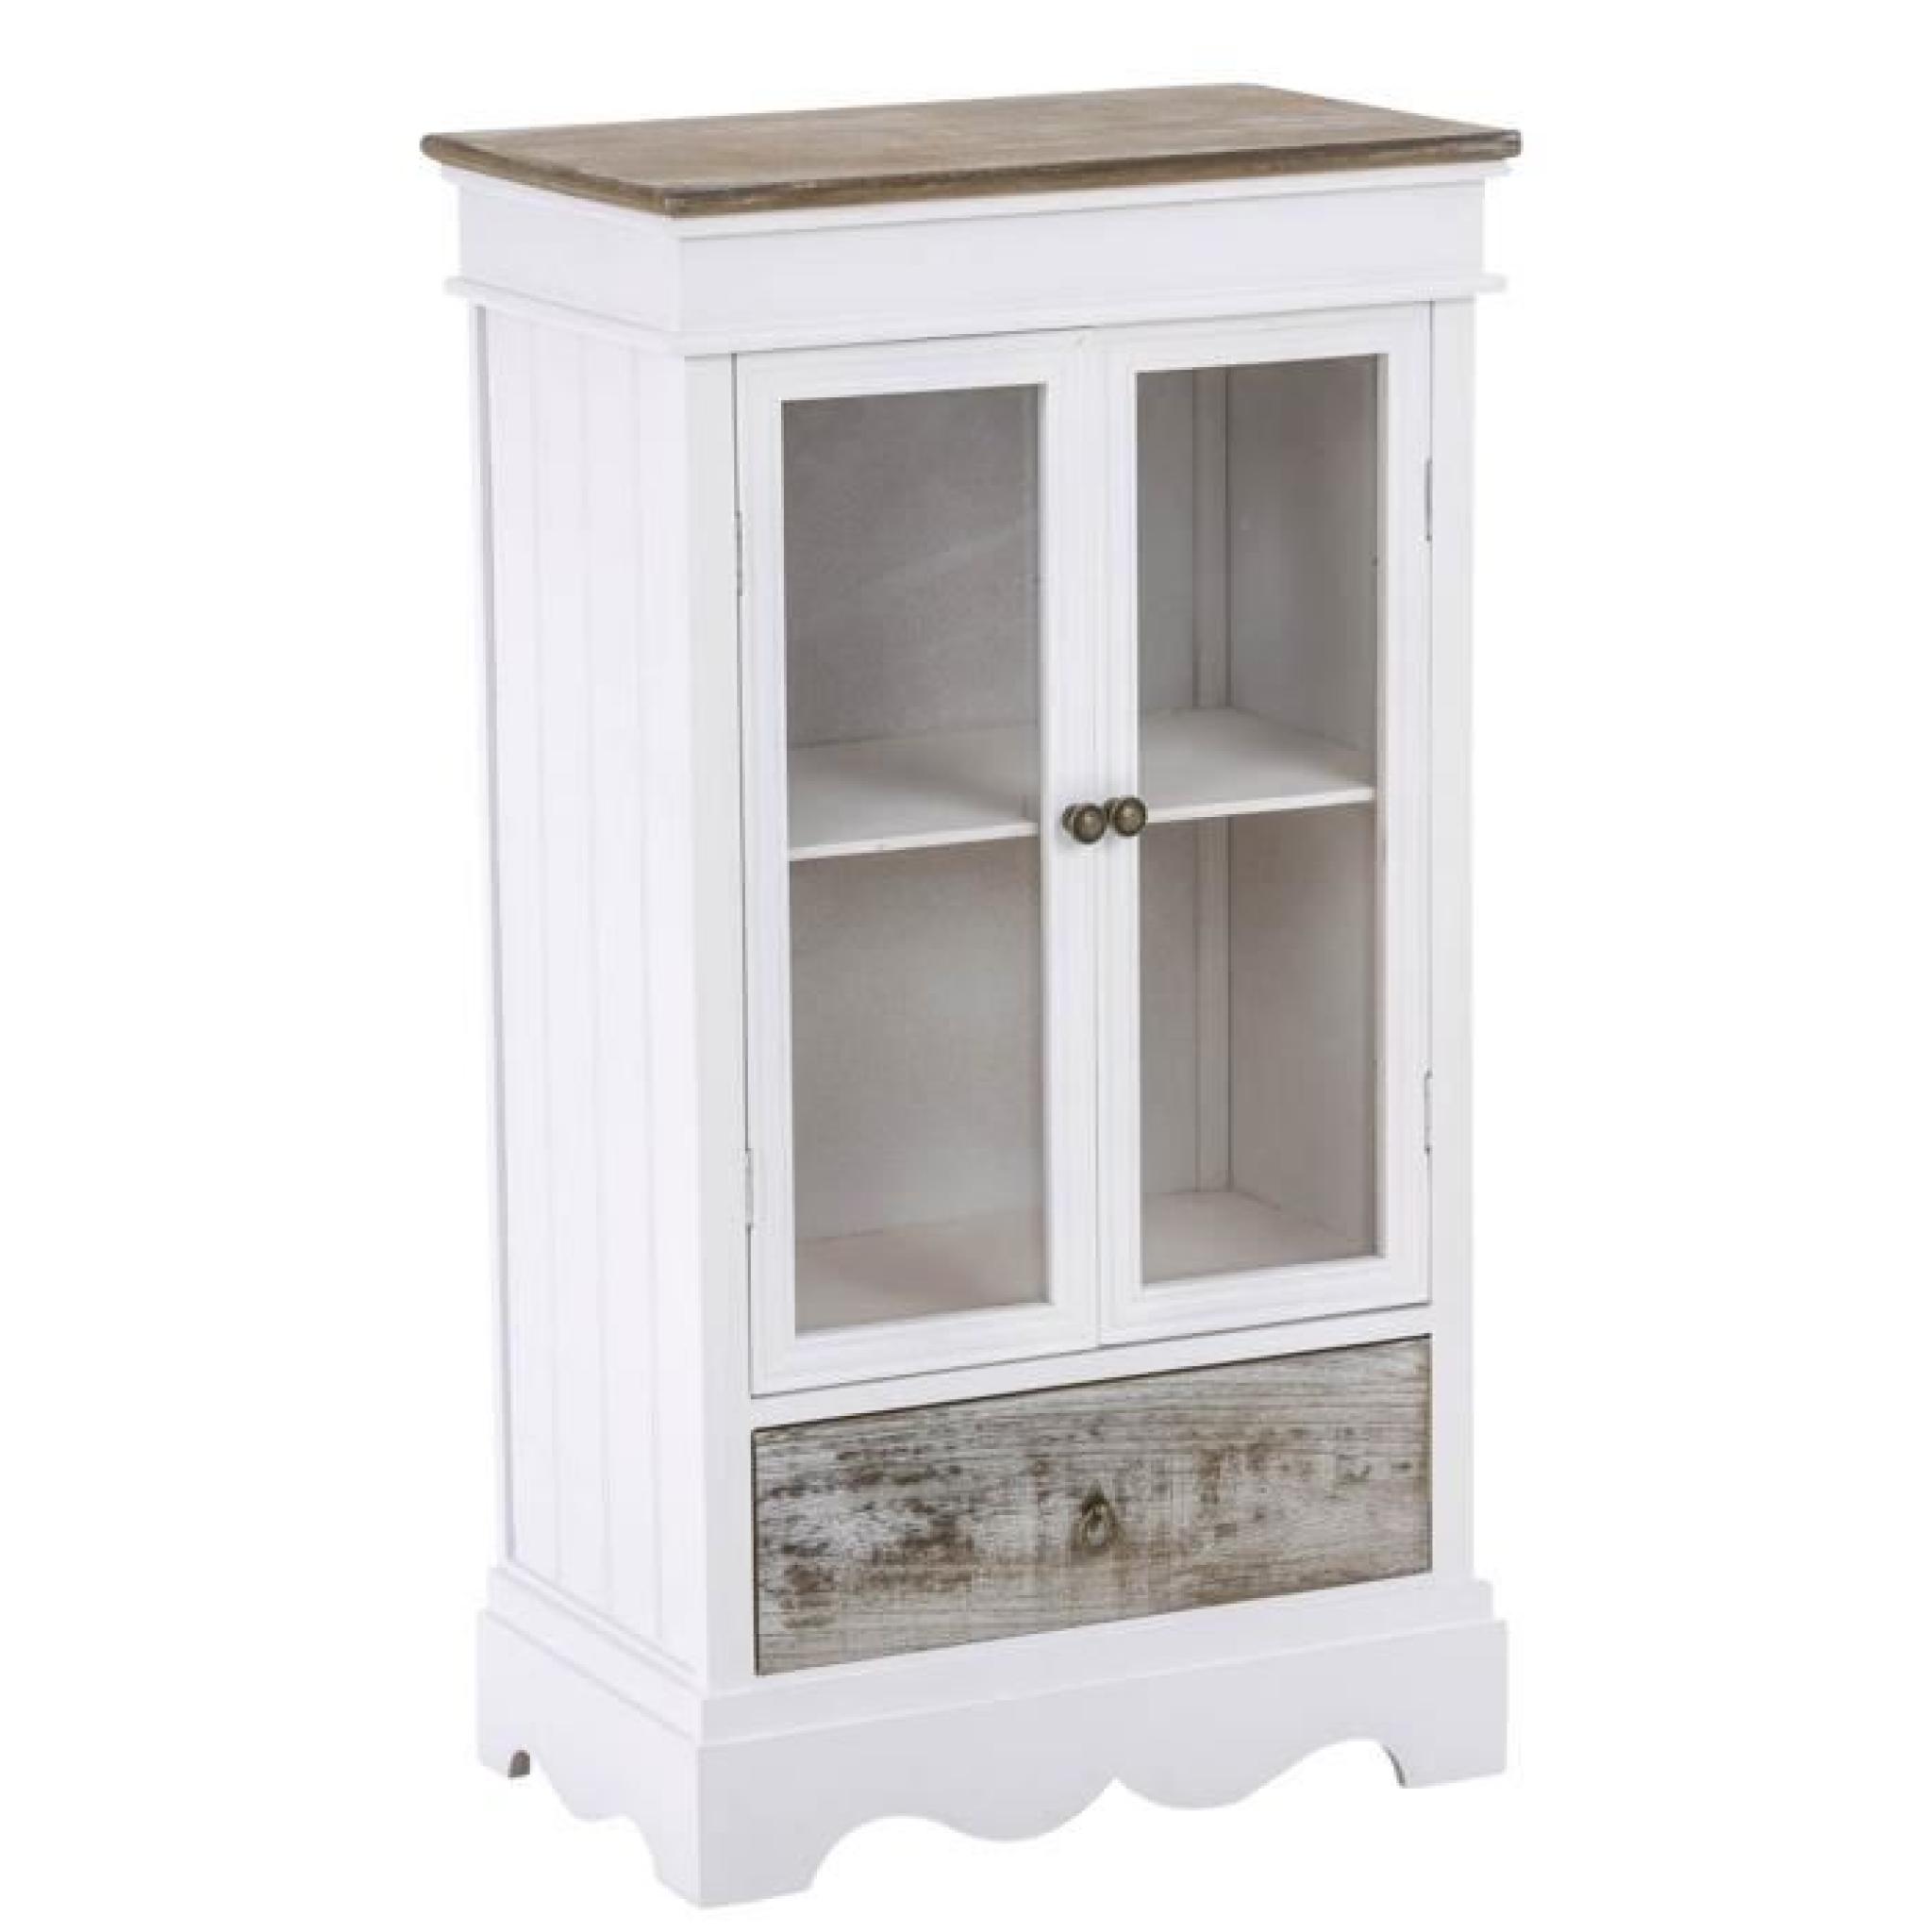 Commode en bois coloris blanc et brun  avec un tiroir et 2 portes en verre à 2 étagères - Dim : H 100 x L 54 x P 33 cm